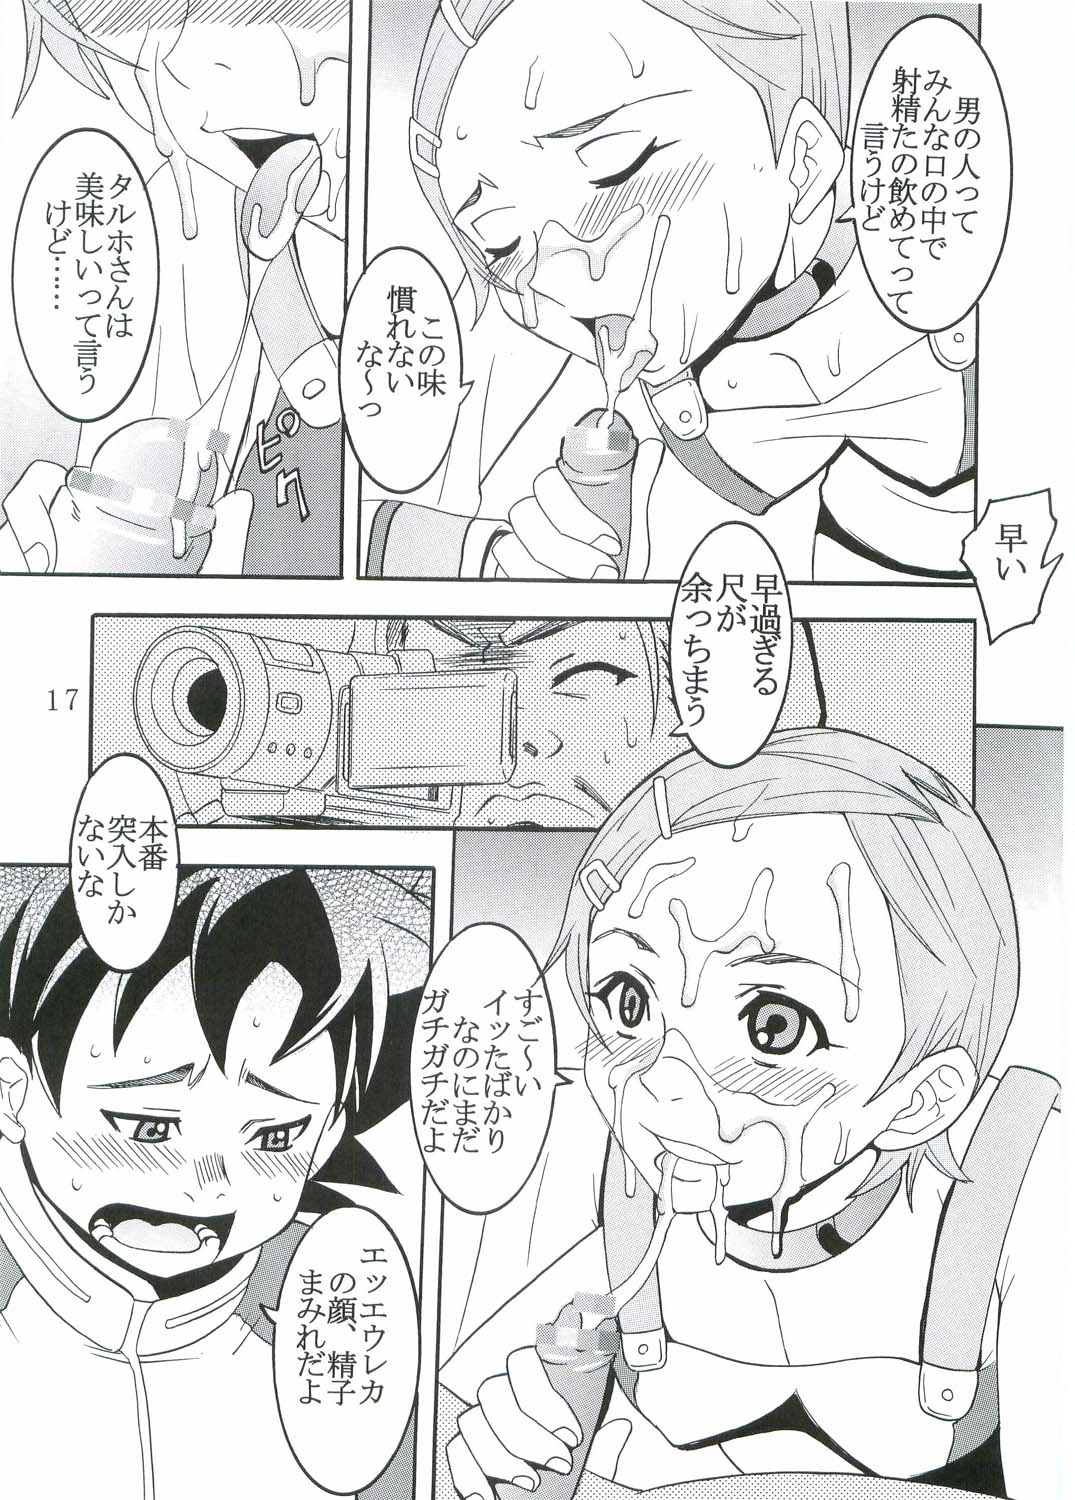 [St. Rio (Kitty, Kouenji Rei)] Ura ray-out (Eureka seveN) page 18 full